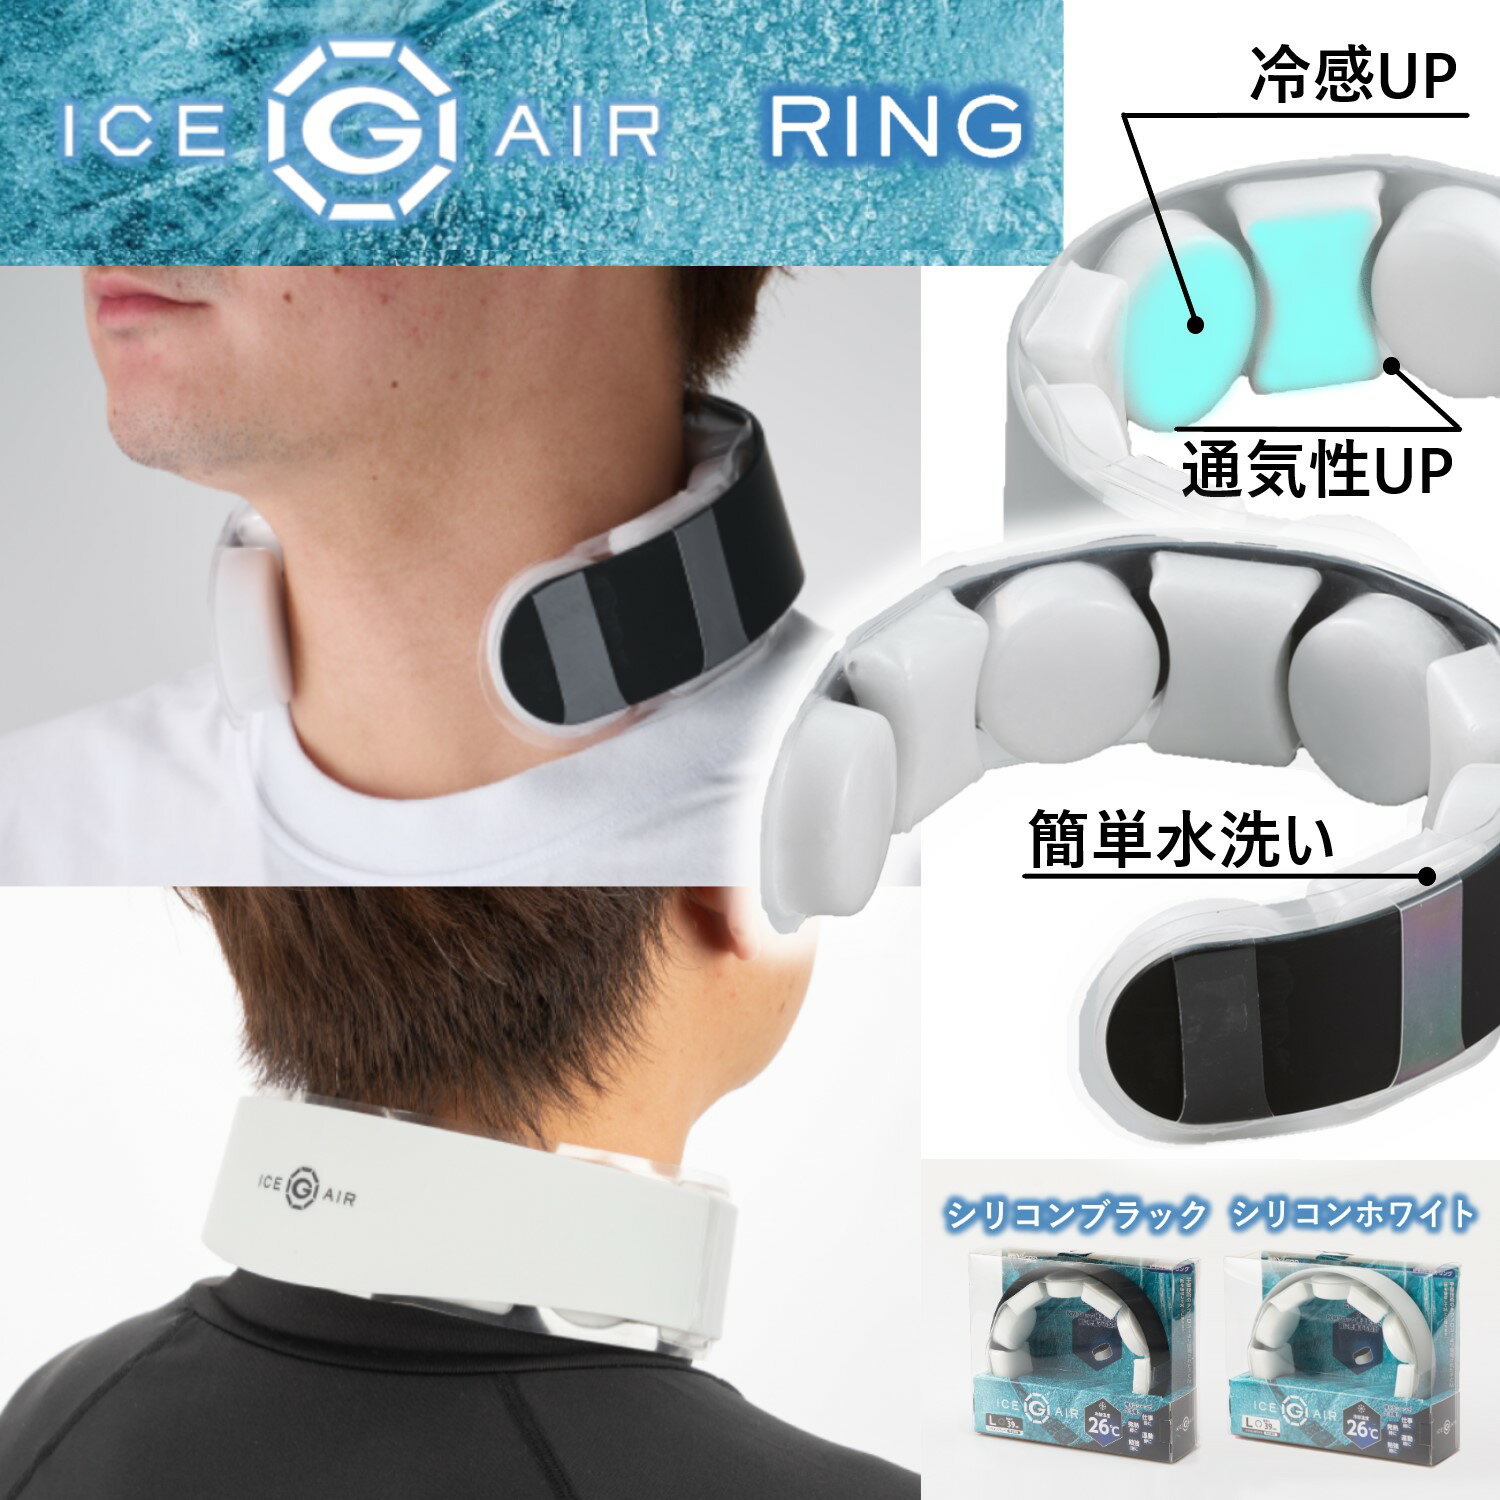 山真製鋸 ( Y'sGOD JAPAN ) 2024 PCM 冷却素材 ice-G AIR RING アイスジー エア リング 26℃  シリコンホワイト シリコンブラック M/Lサイズ